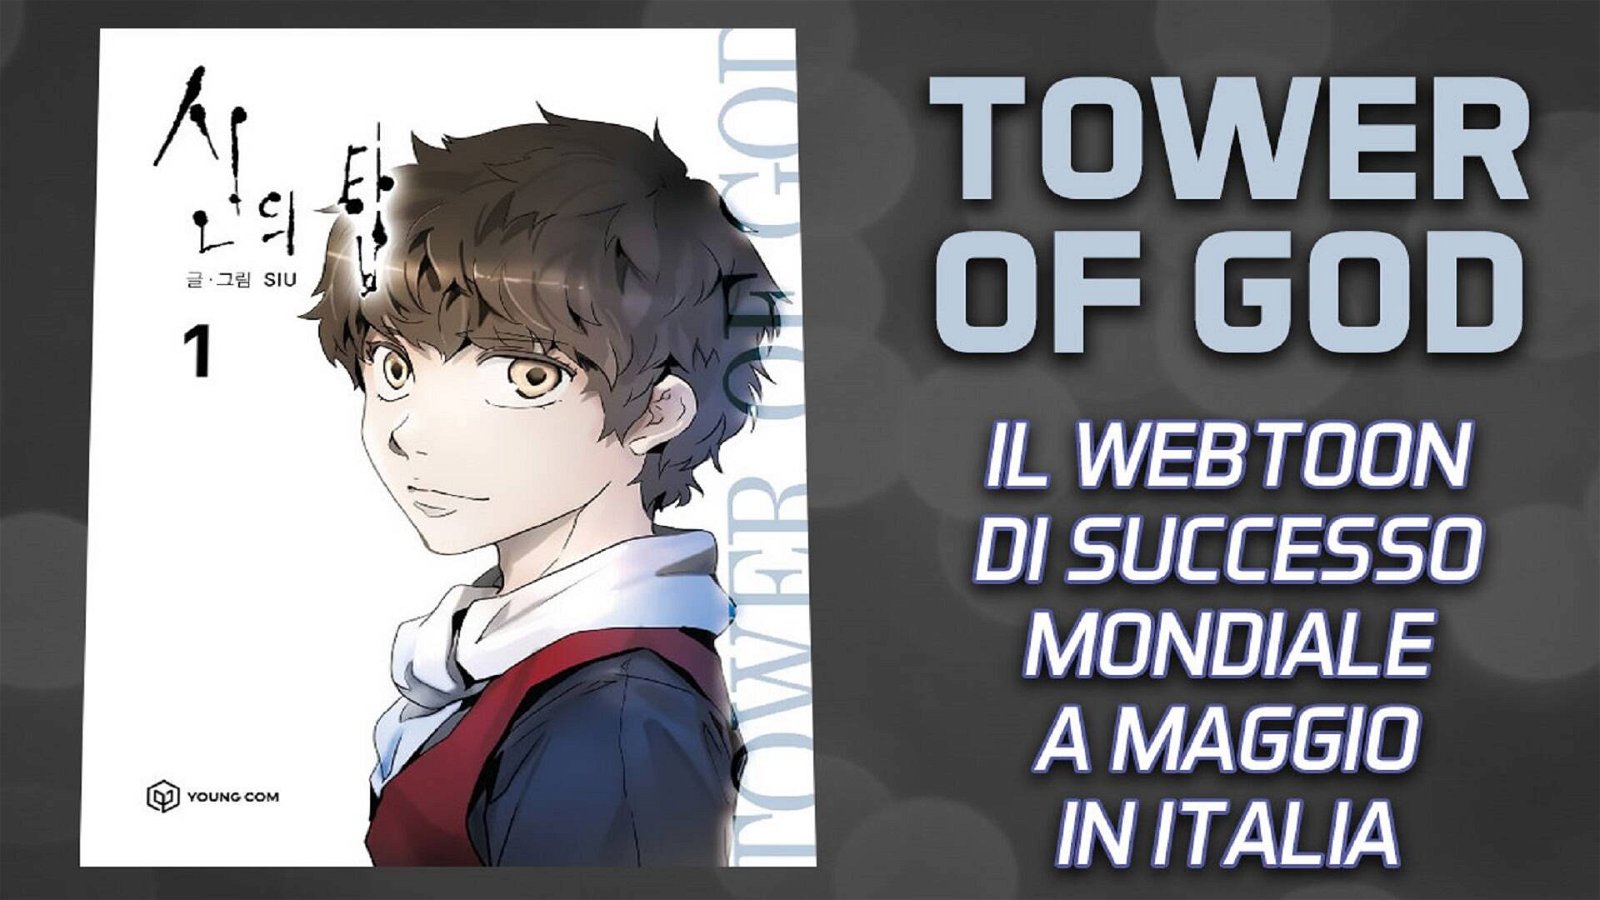 Immagine di Tower of God - lo spettacolare webtoon arriva in Italia grazie a Edizioni Star Comics